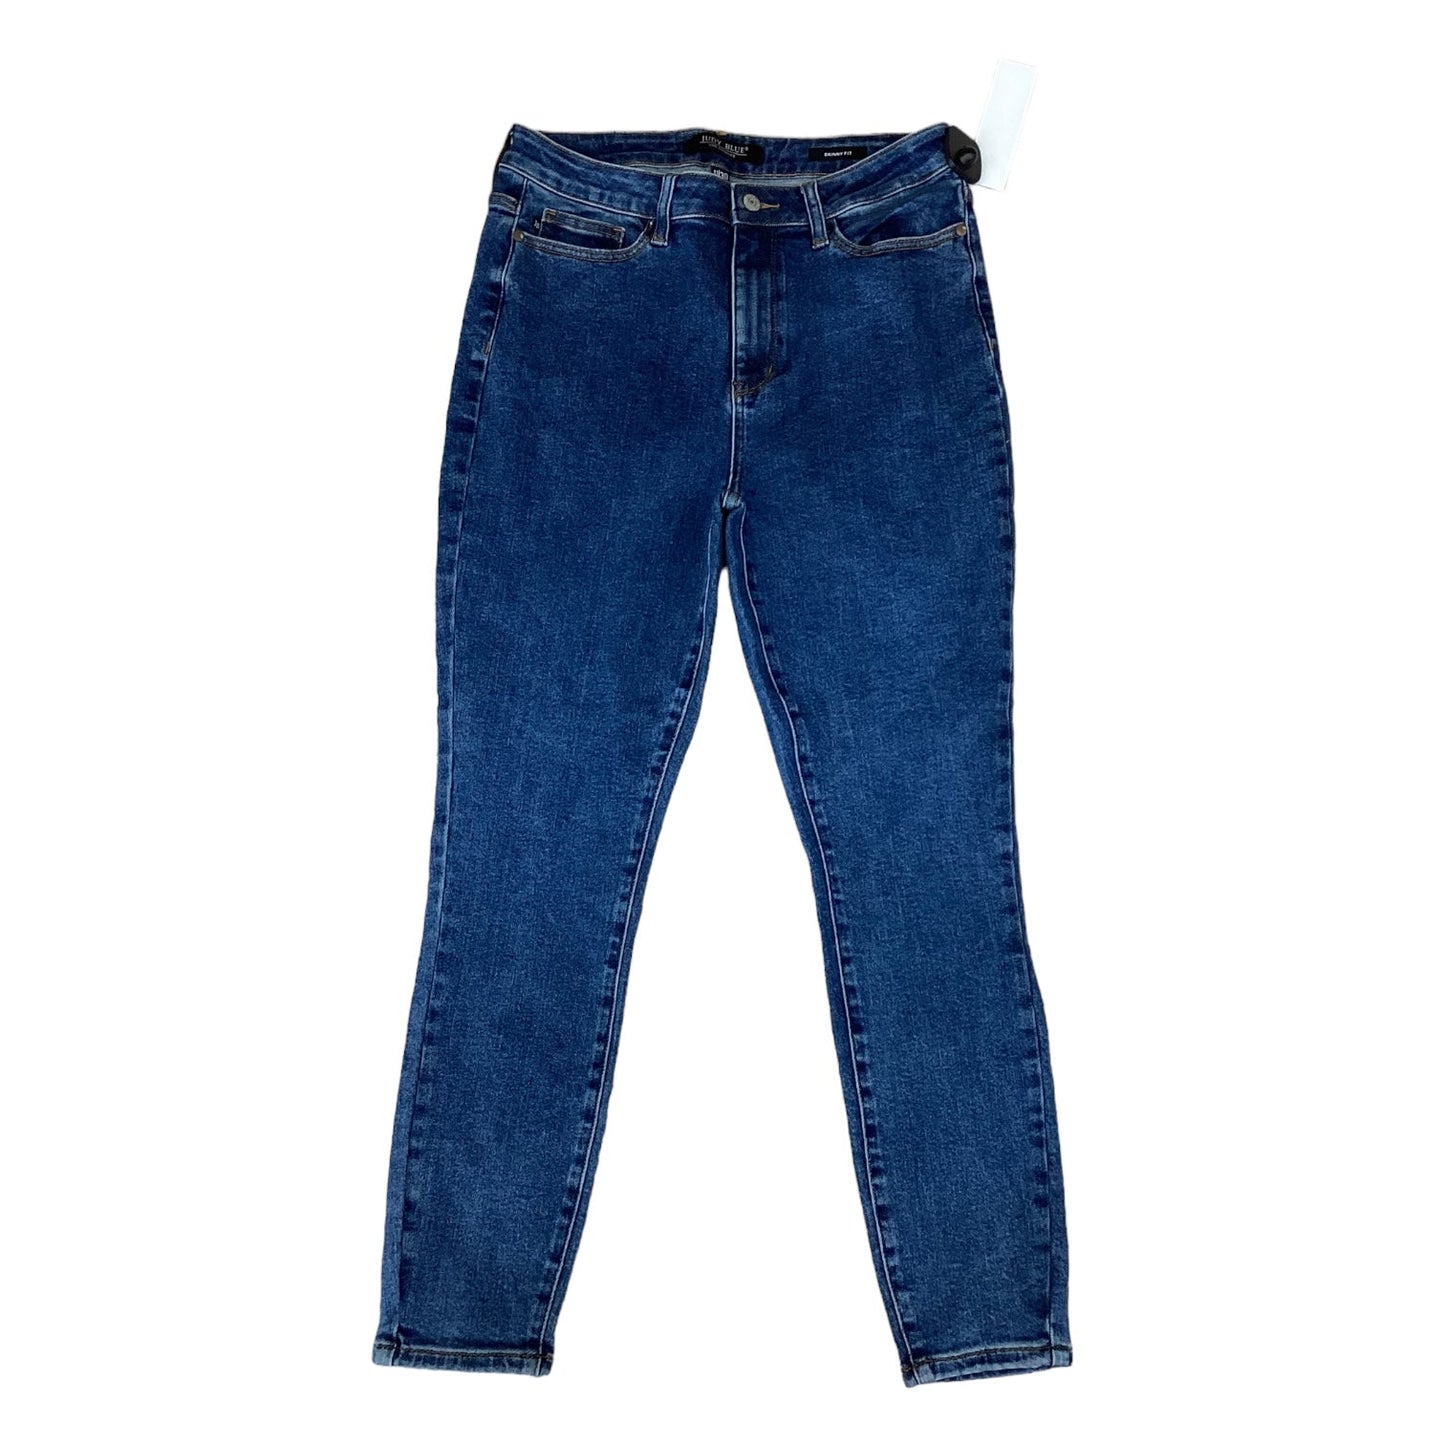 Blue Denim Jeans Designer Judy Blue, Size 8